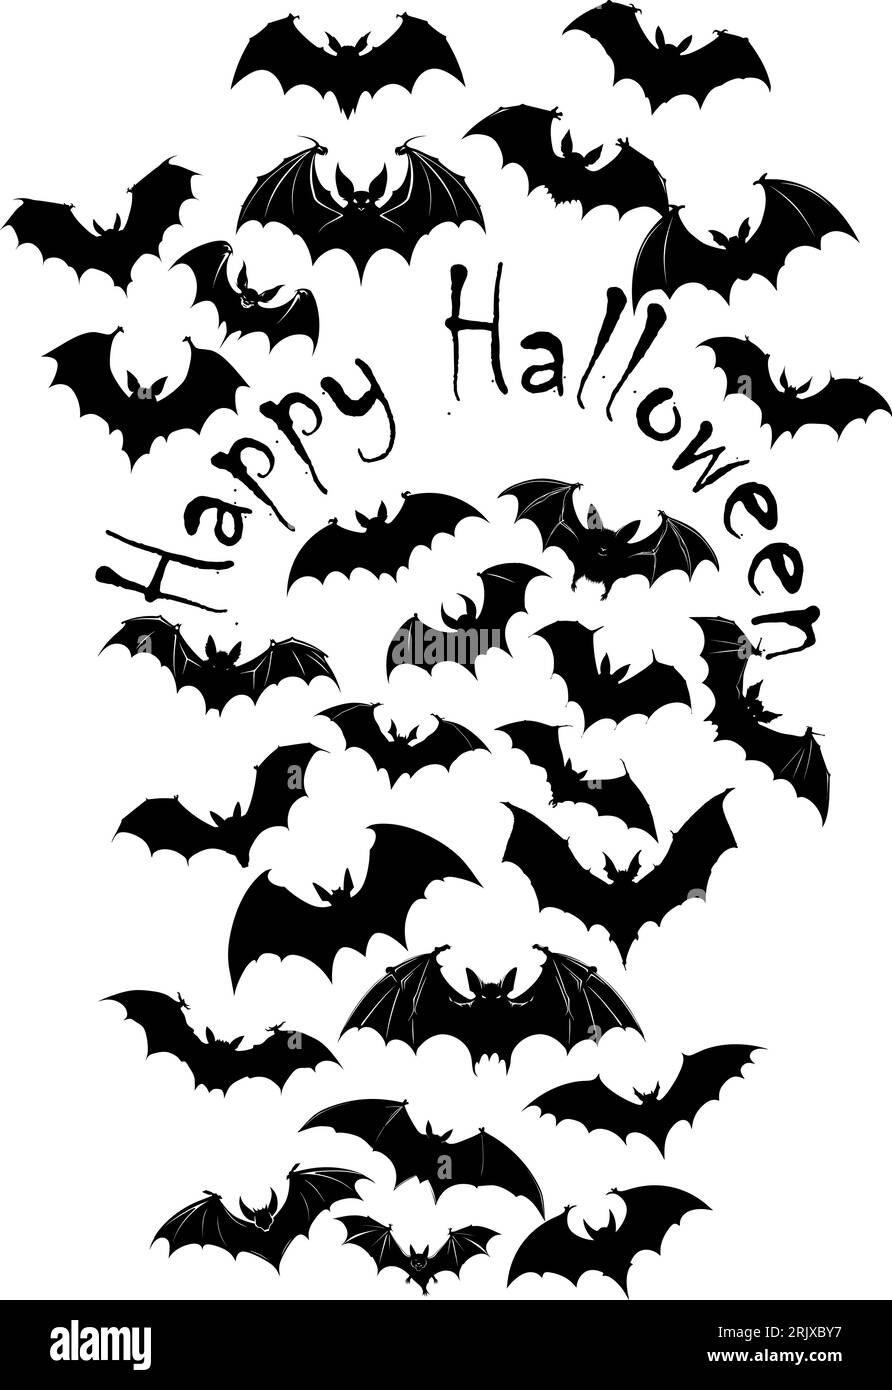 Essaim de chauves-souris noires horribles isolé sur fond d'Halloween vecteur blanc. Illustration de créatures nocturnes de renard volant. Silhouettes de chauves-souris volantes Illustration de Vecteur